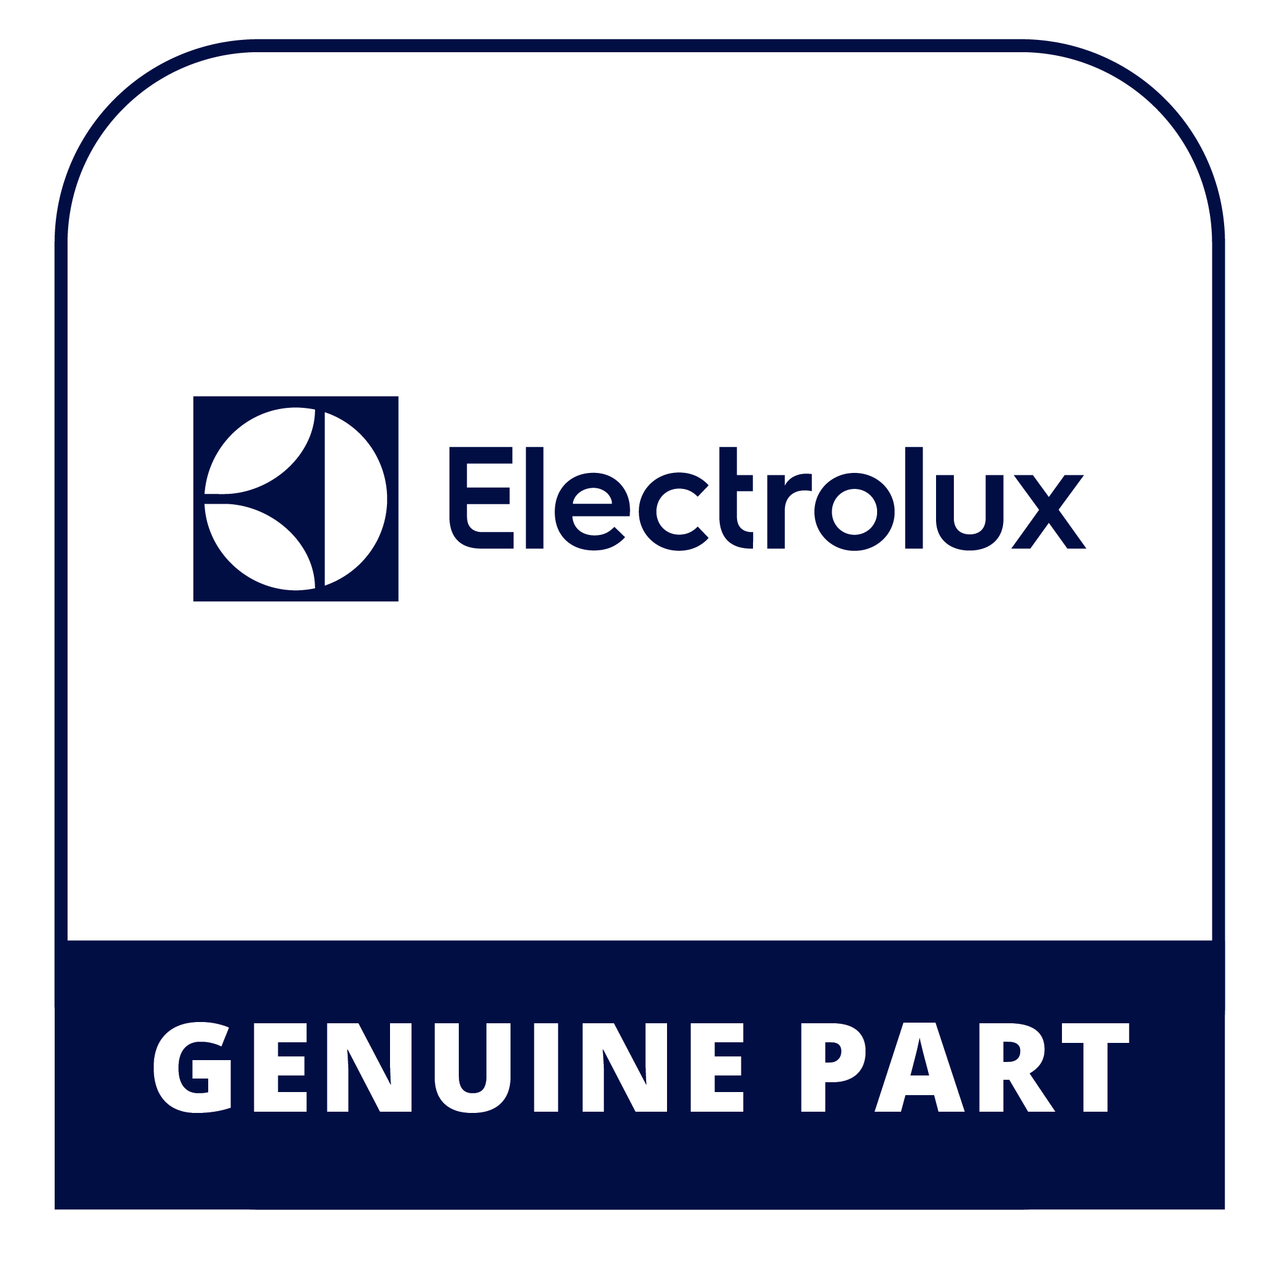 Frigidaire - Electrolux 297326200 #Vp#Door Bin - Genuine Electrolux Part